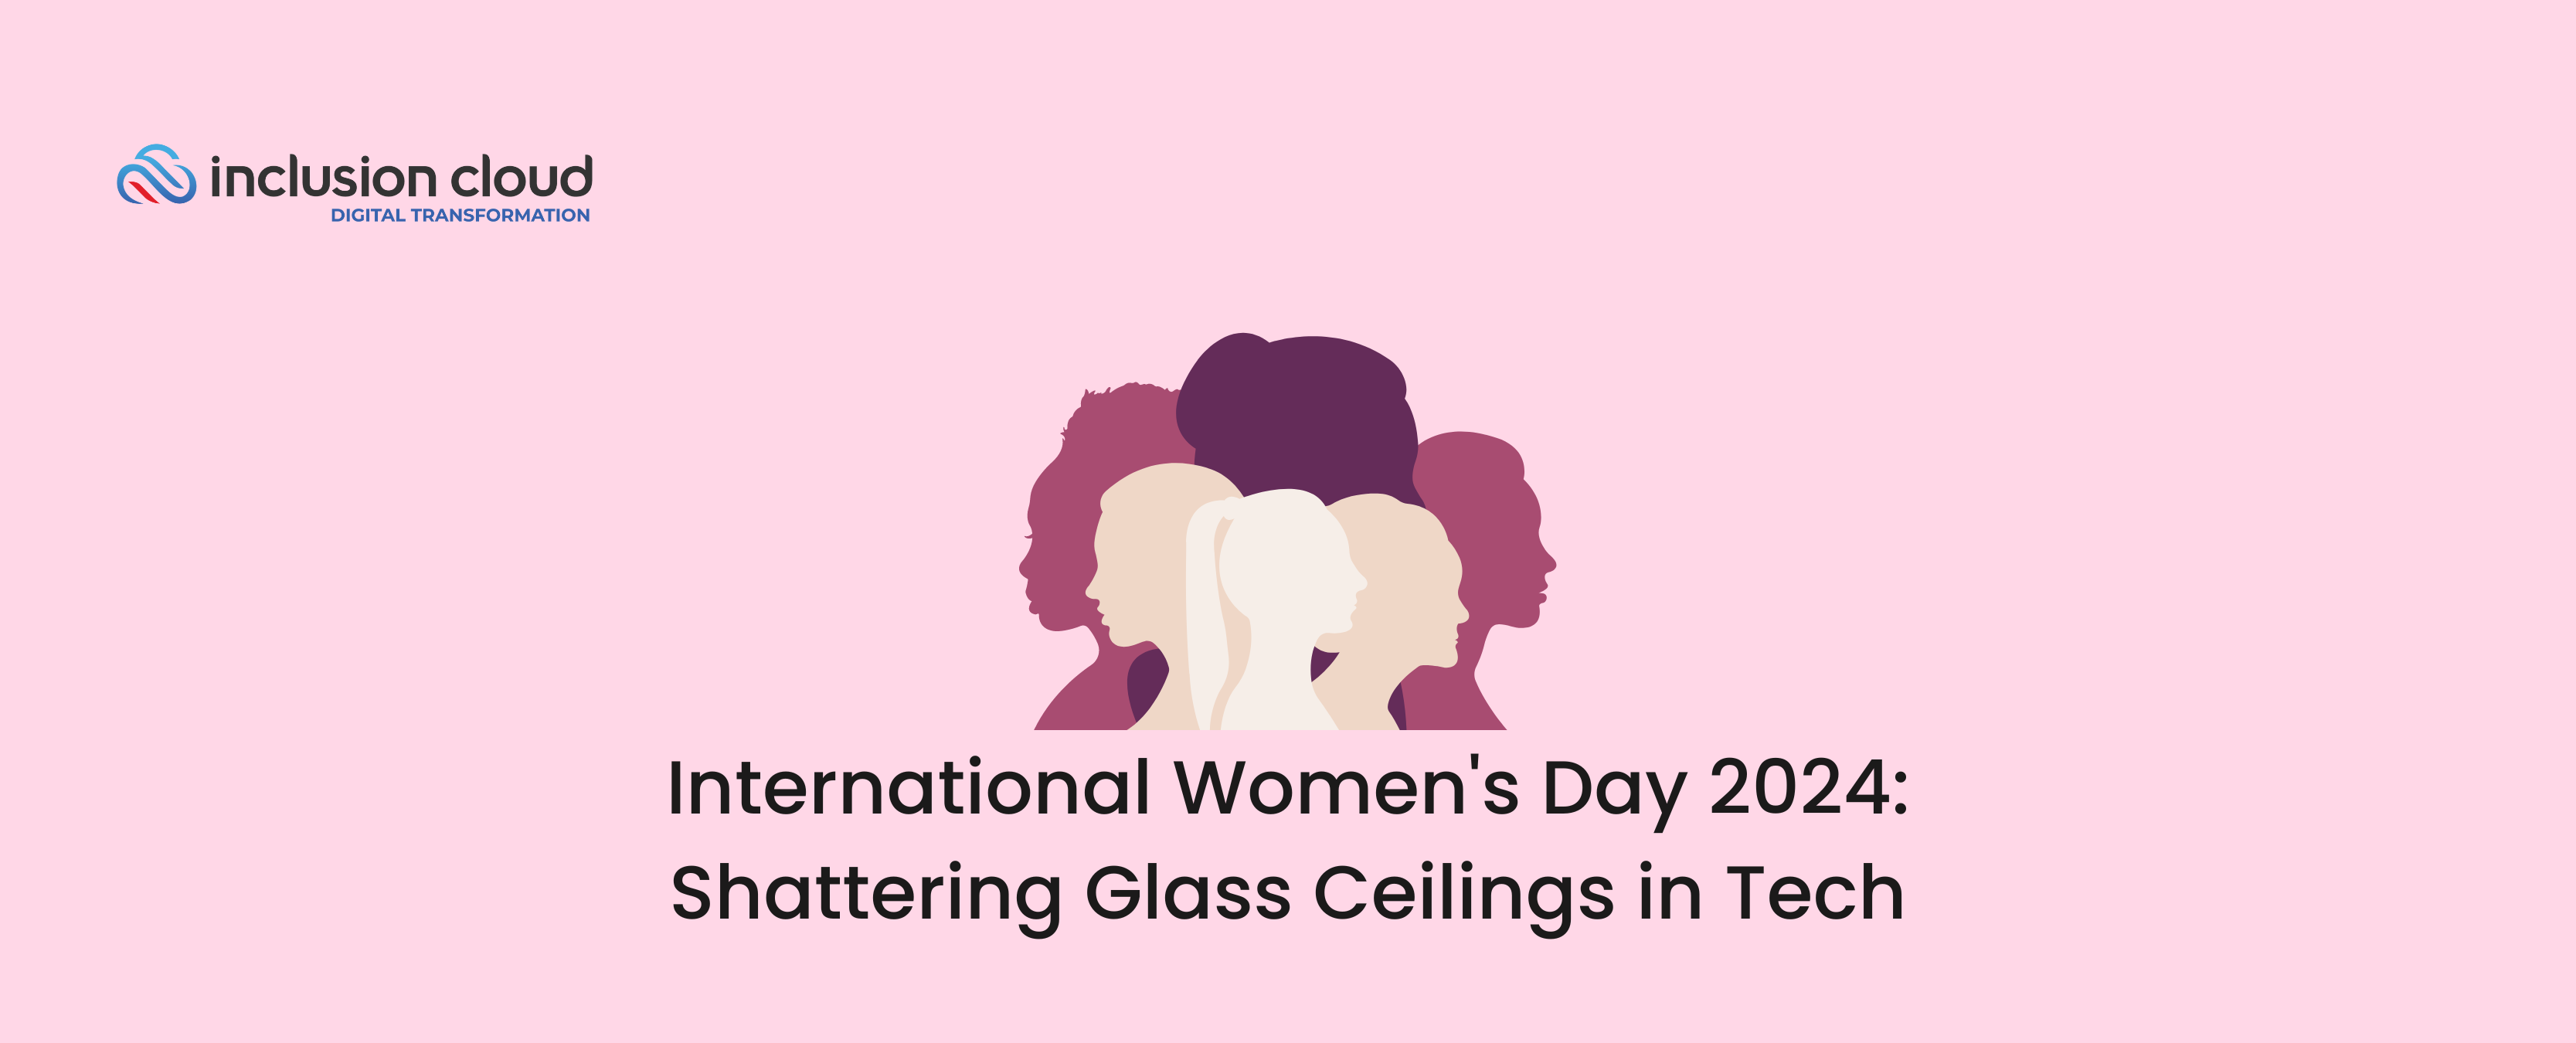 International Women's Day 2024: Shattering Glass Ceilings in Tech